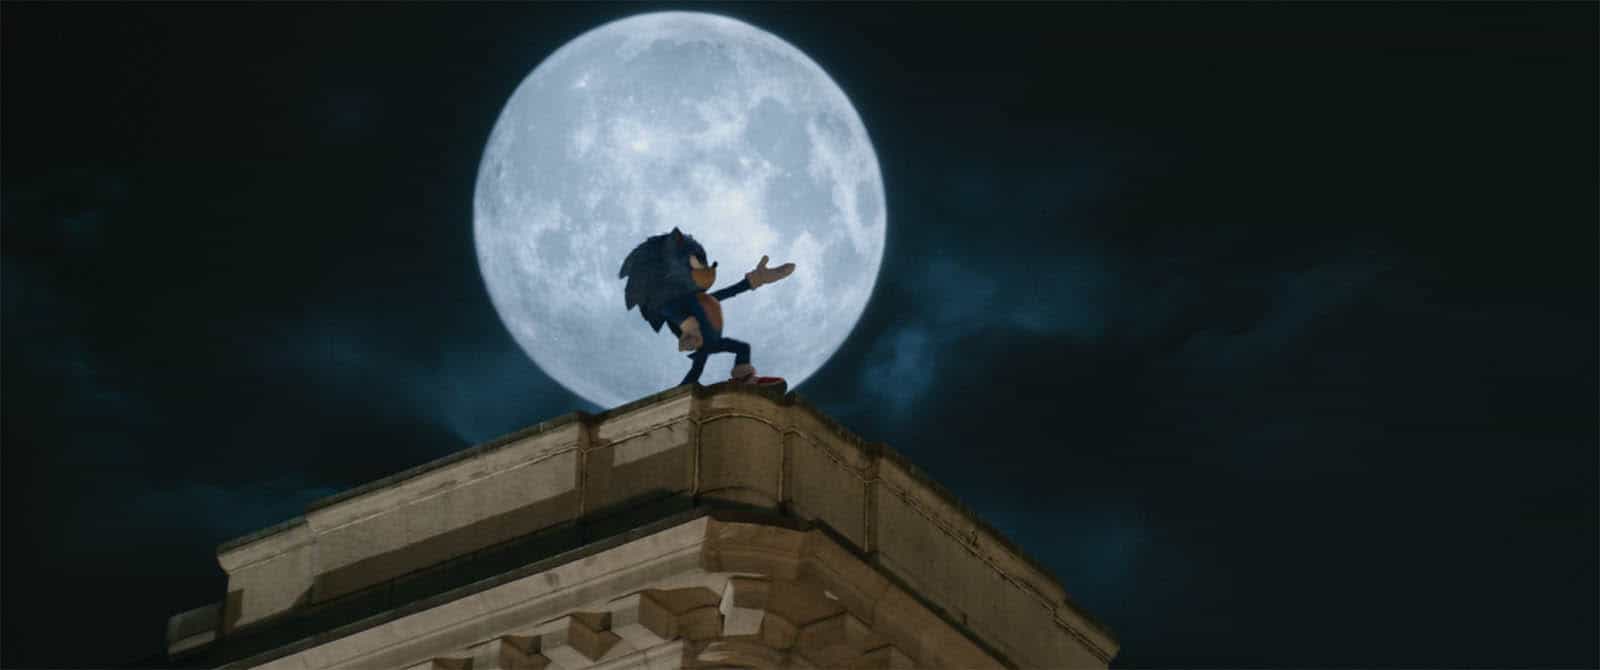 O que QUEREMOS ver em 'Sonic 2 – O Filme' - CinePOP